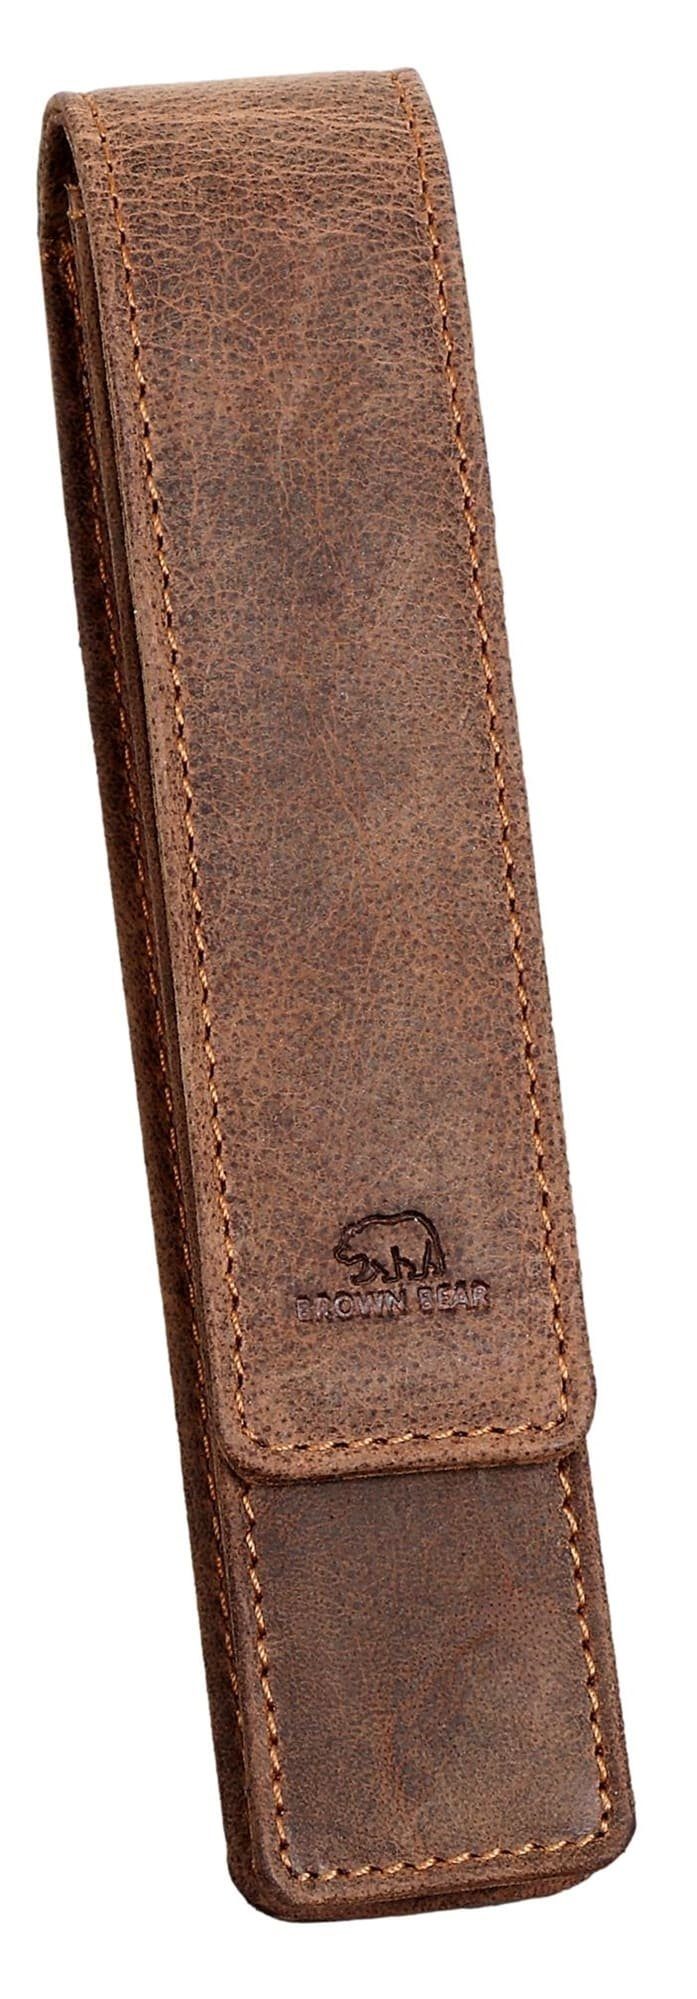 Verkaufsgebot Brown Bear Schreibgeräteetui Golf für - Braun-Vintage aus einen und Magnetverschluss für Damen Stift, Fülleretui mit 01 Braun Herren Vintage Echtleder